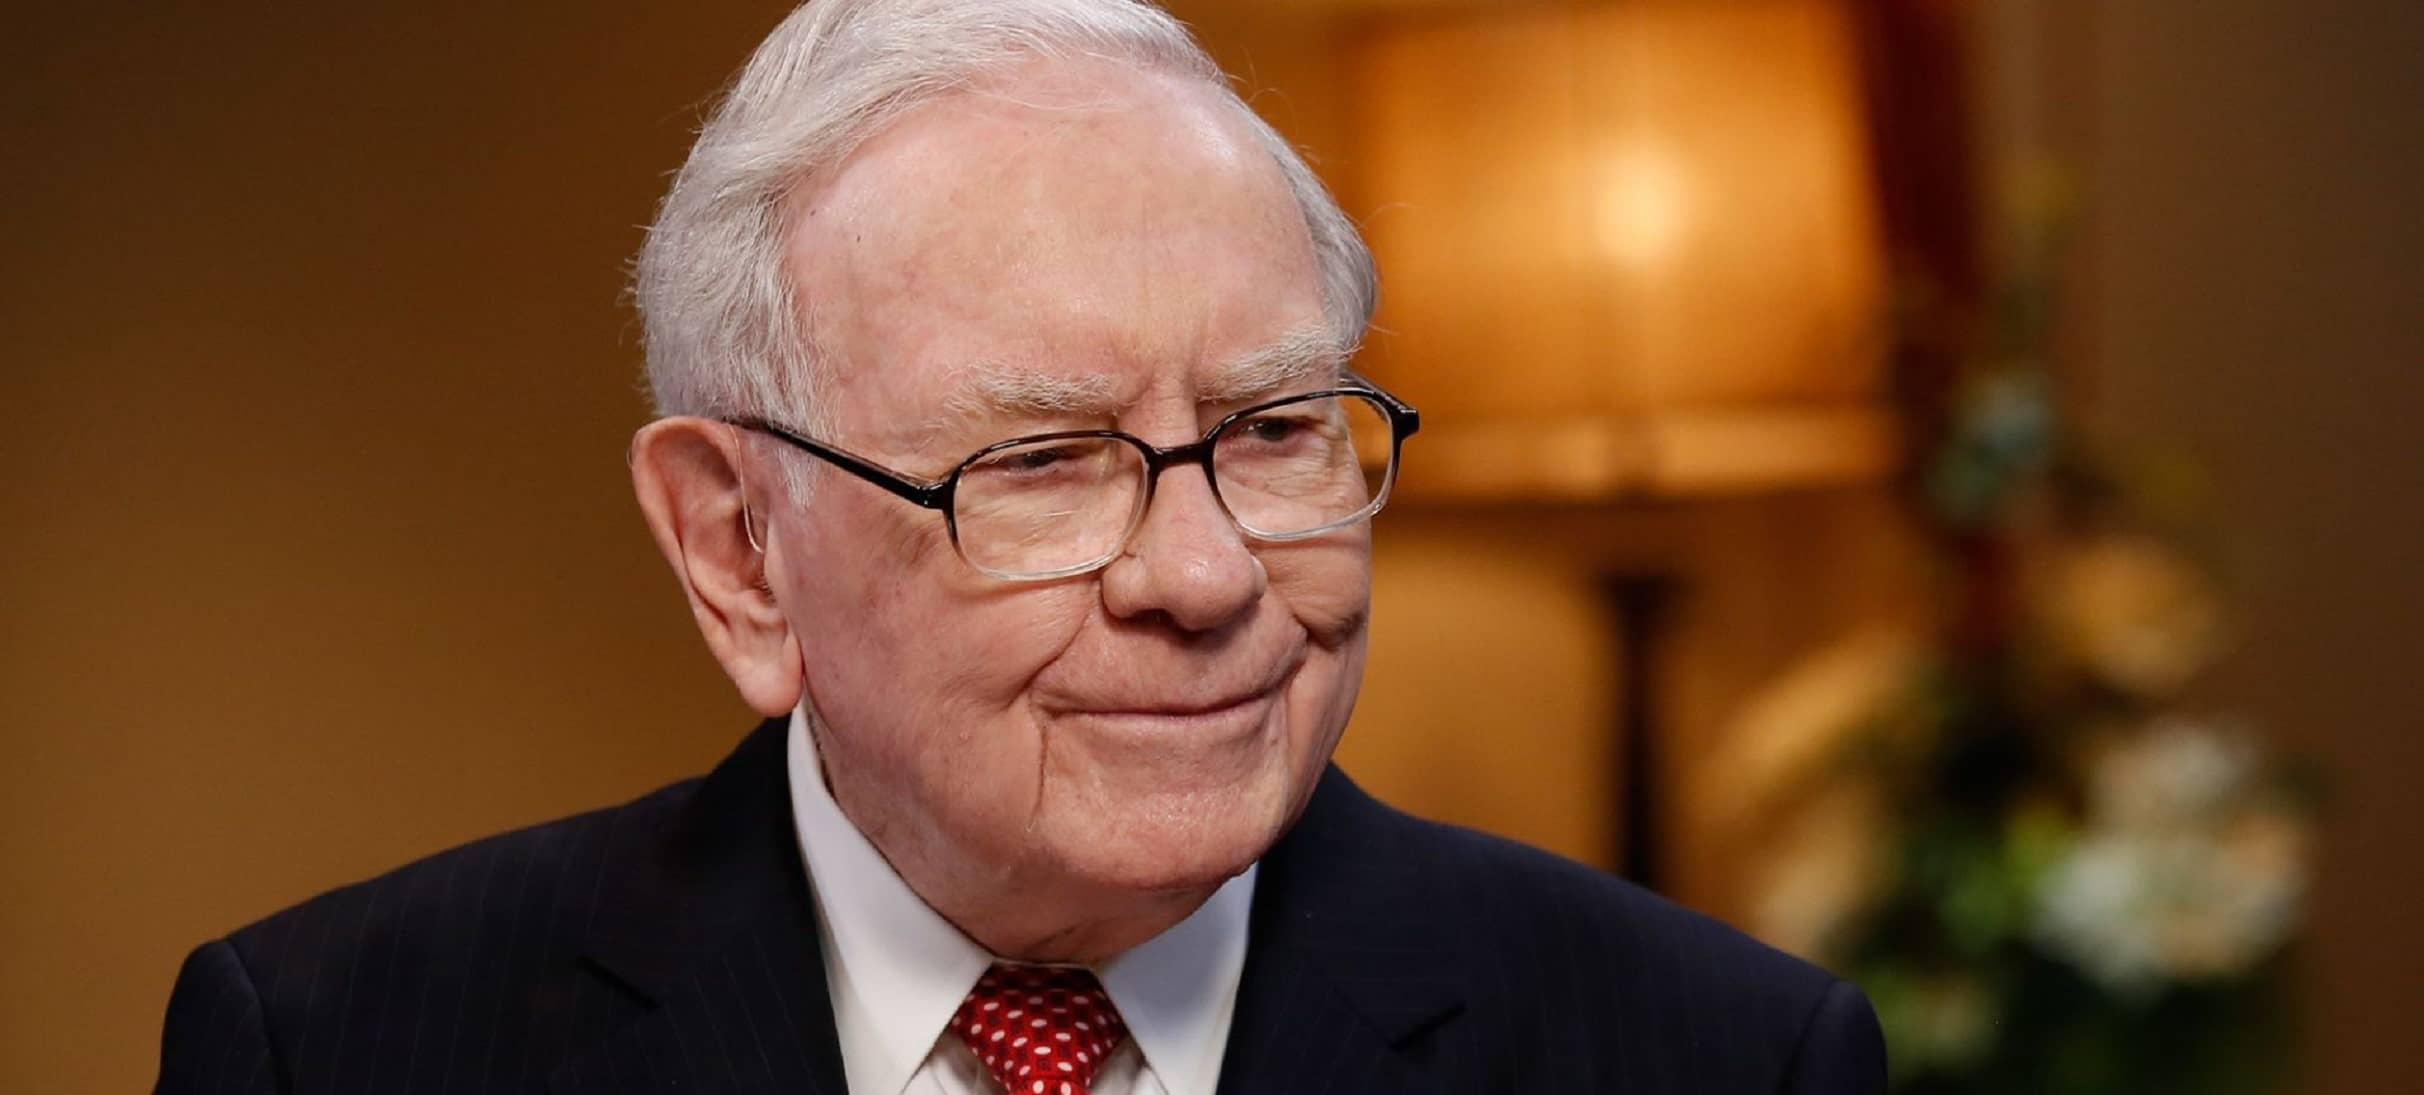 Indicador “Warren Buffett” prevê queda no mercado de ações – o que isso significaria para o Bitcoin?